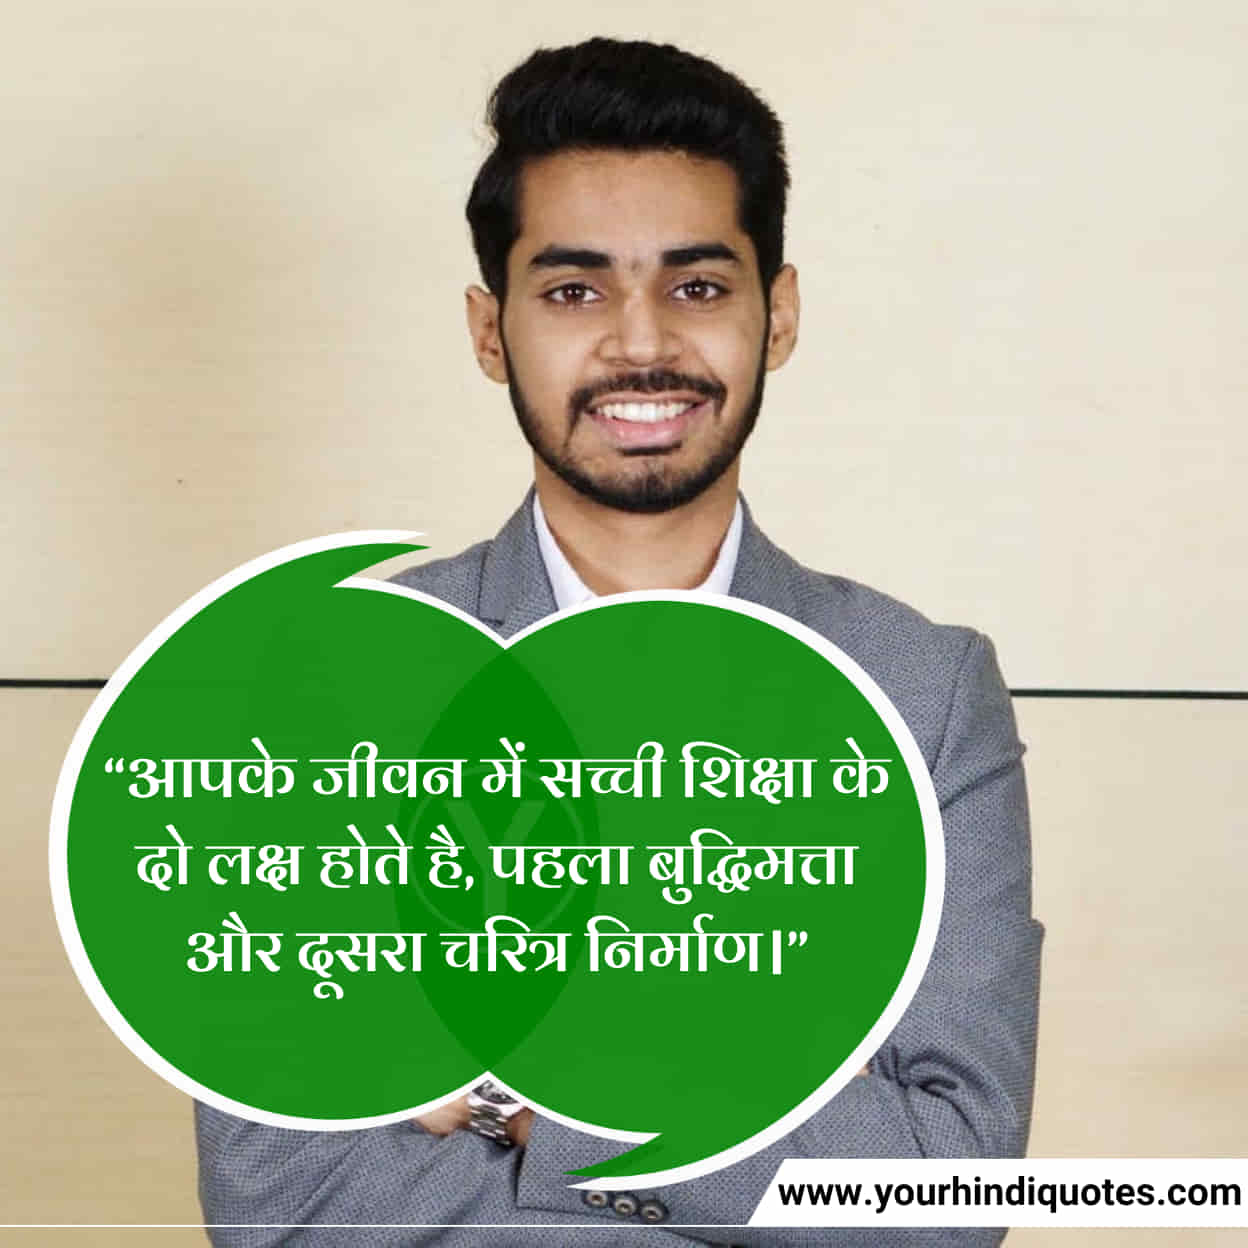 Hindi Education Quotes